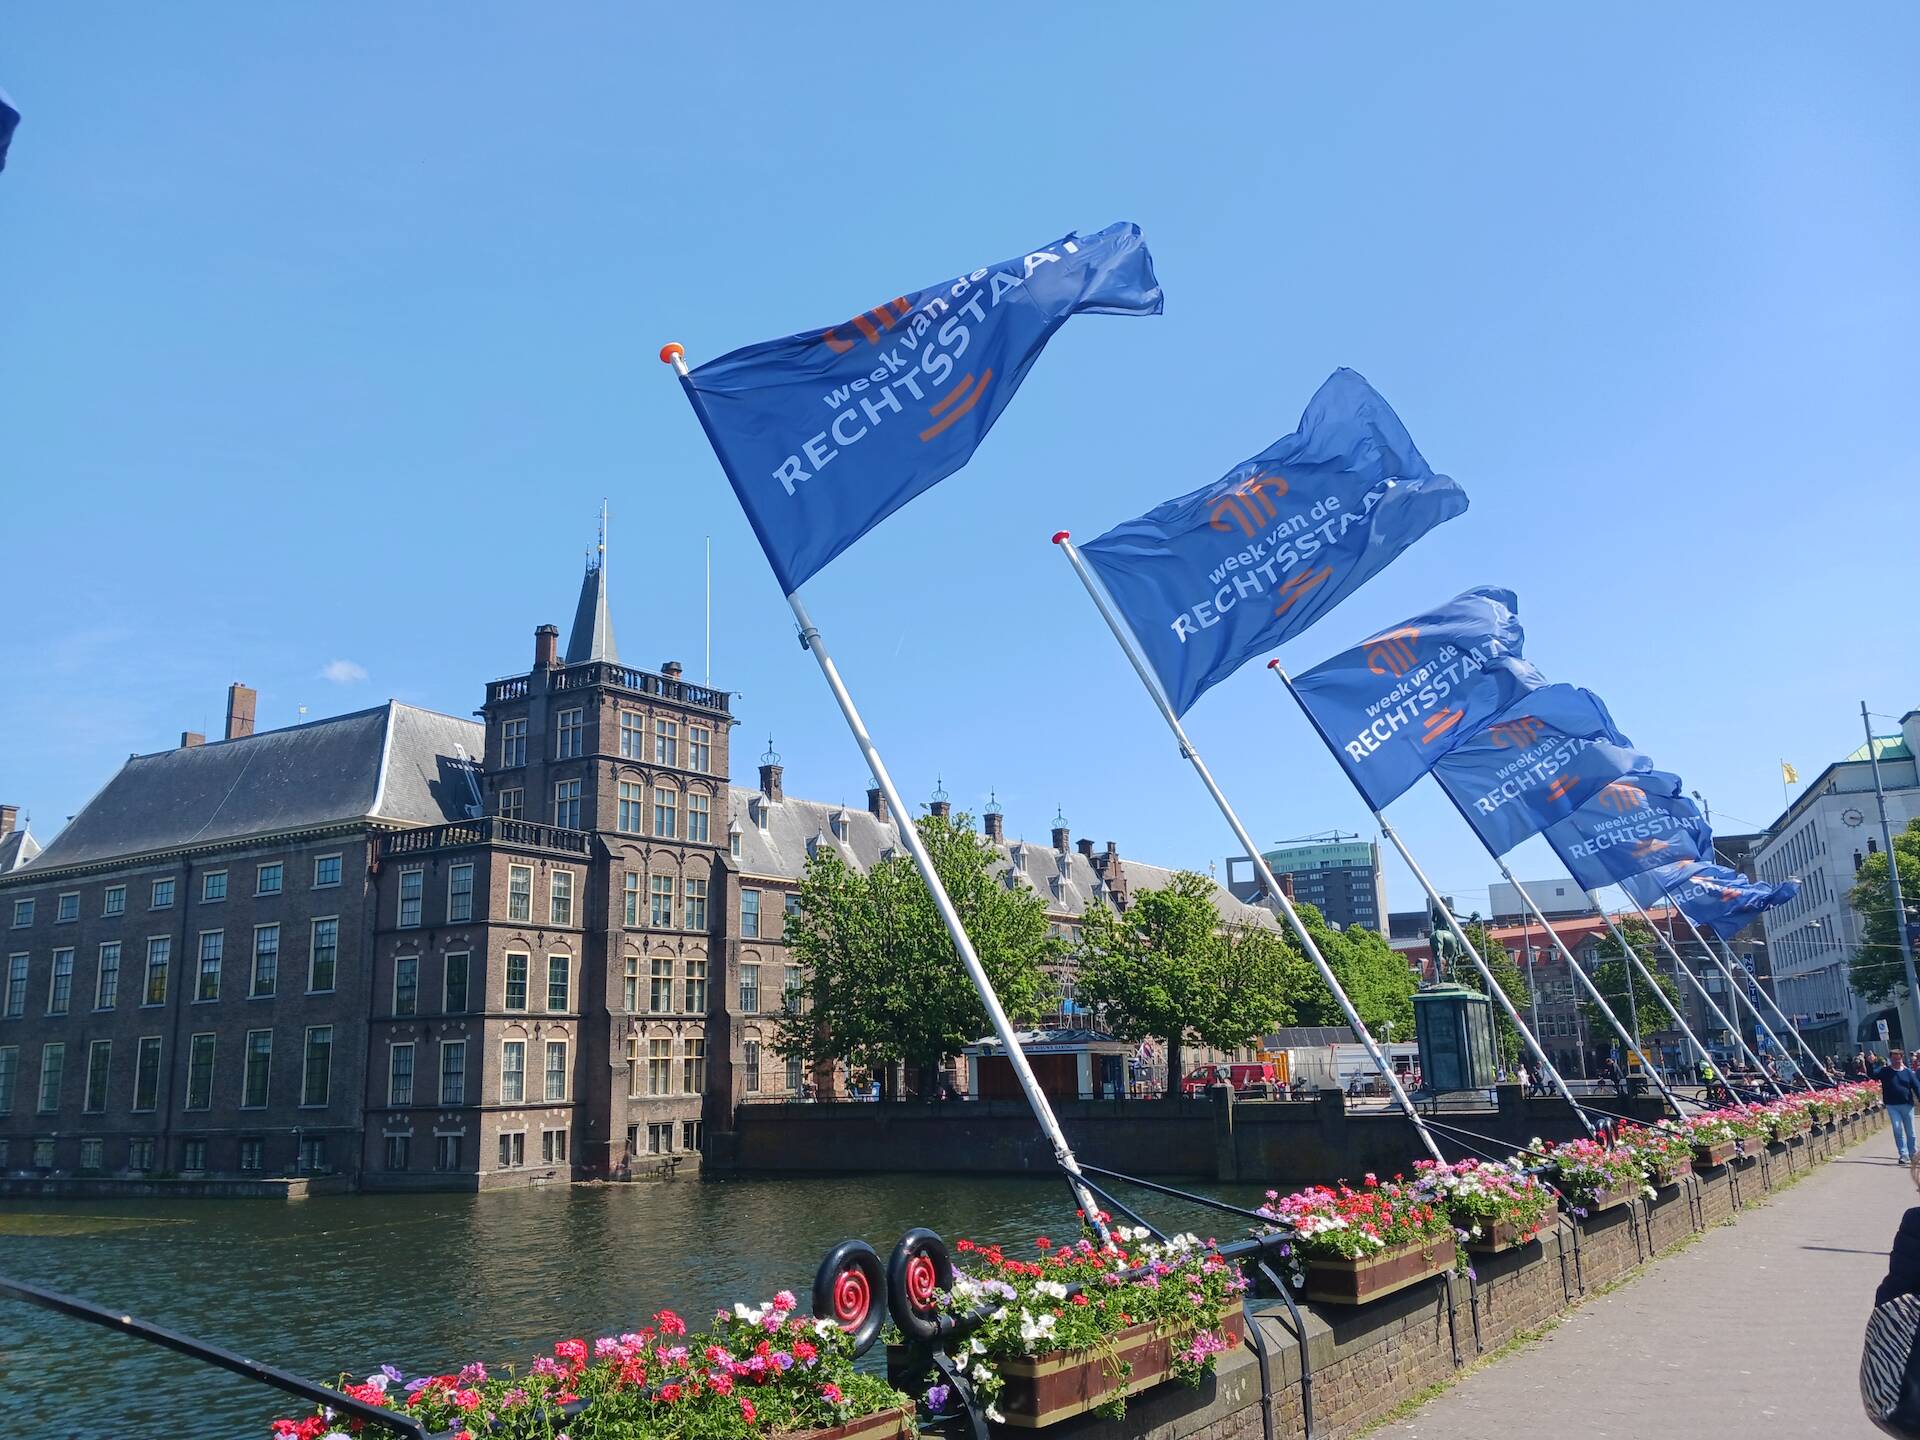 Afbeelding van de vlaggen aan de Hofvijver met op de achtergrond de Mauritstoren. Op de vlaggen staat 'week van de rechtsstaat'.